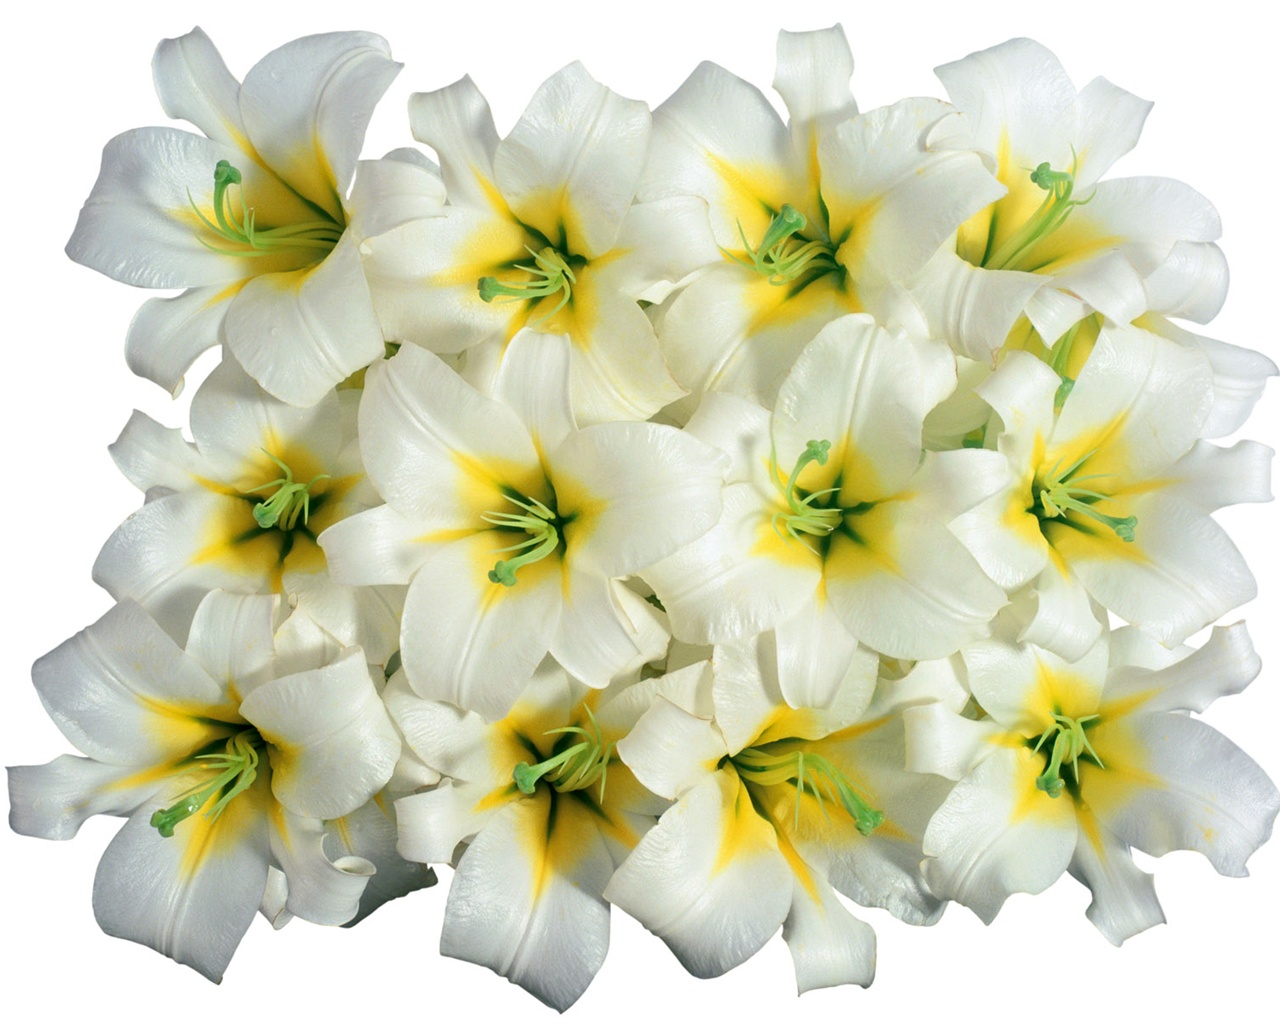 눈같이 흰 꽃 벽지 #3 - 1280x1024